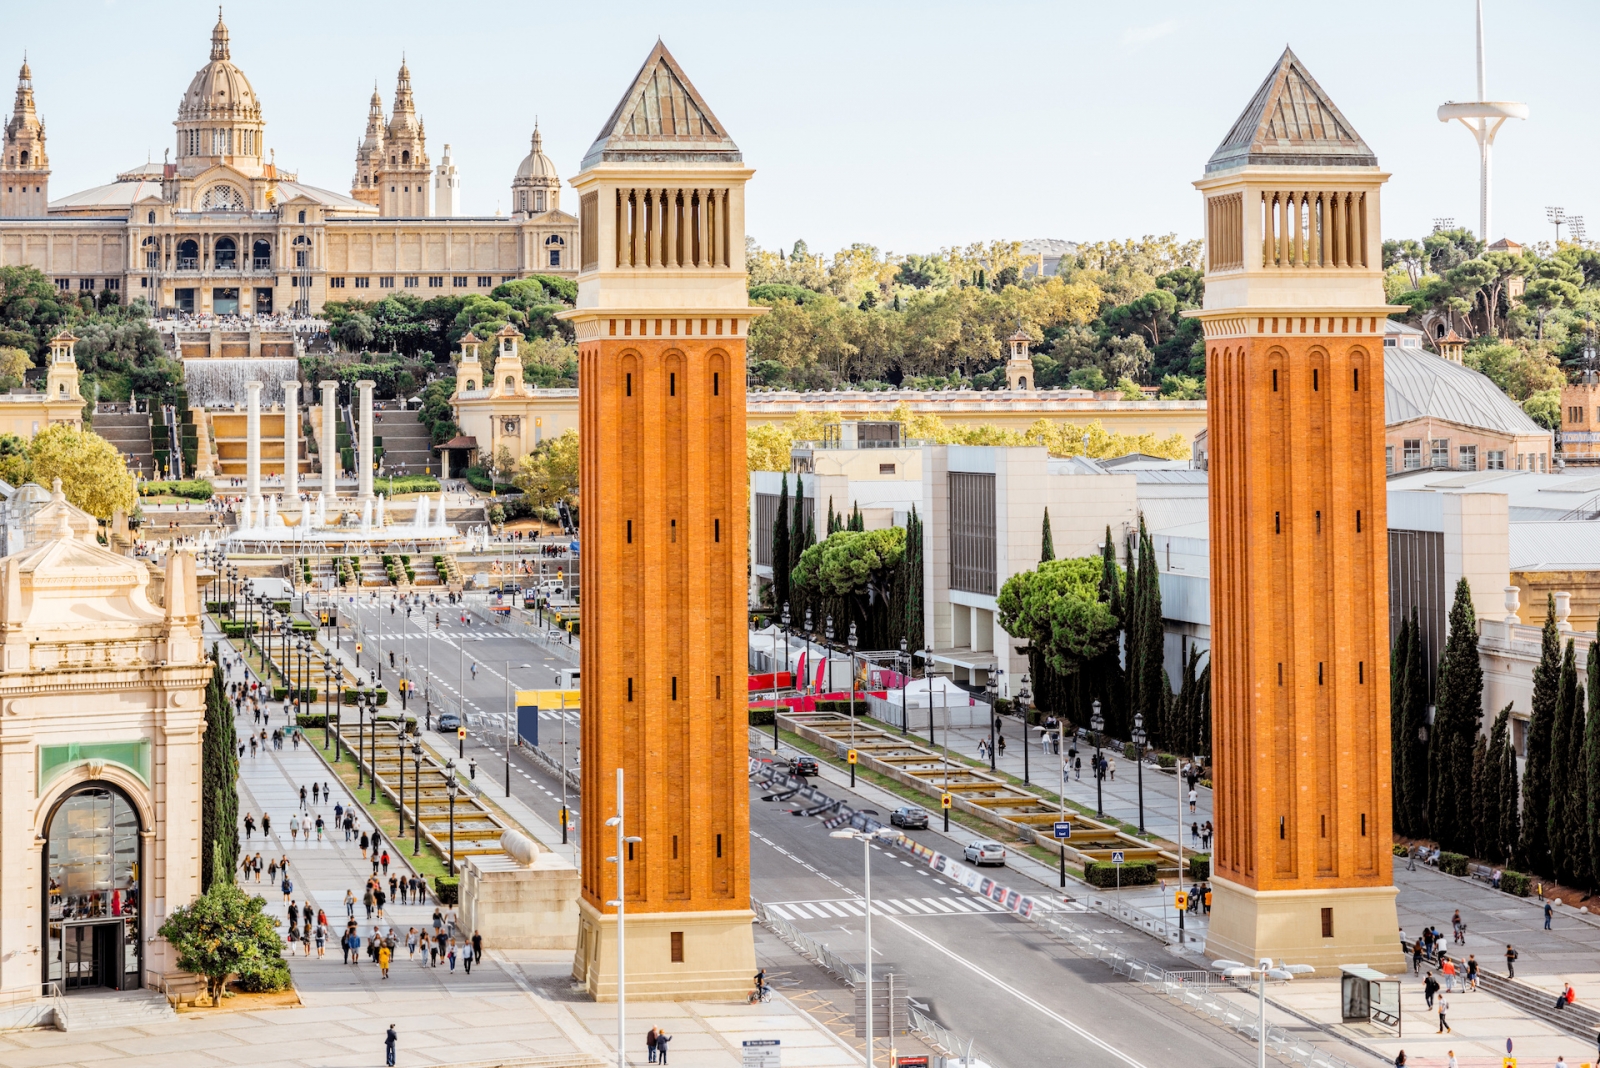 Blick auf die venezianischen Säulen und das Kunstmuseum auf dem spanischen Platz in der Stadt Barcelona